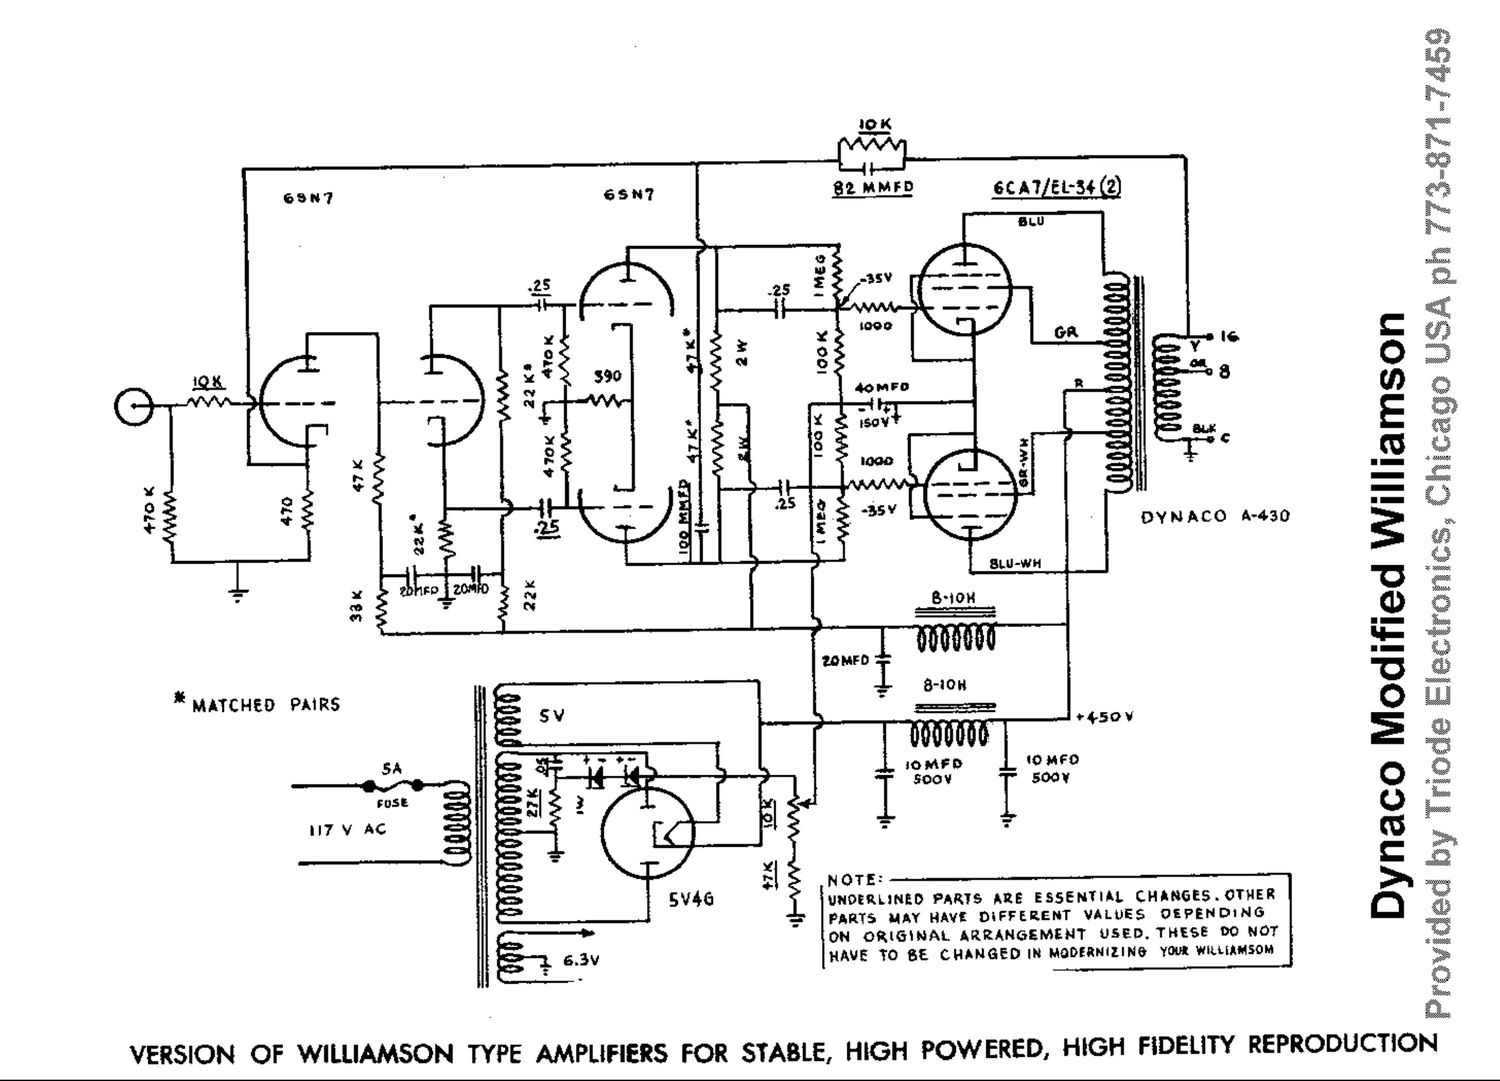 Dynaco Modified Williamson Amplifier Schematic